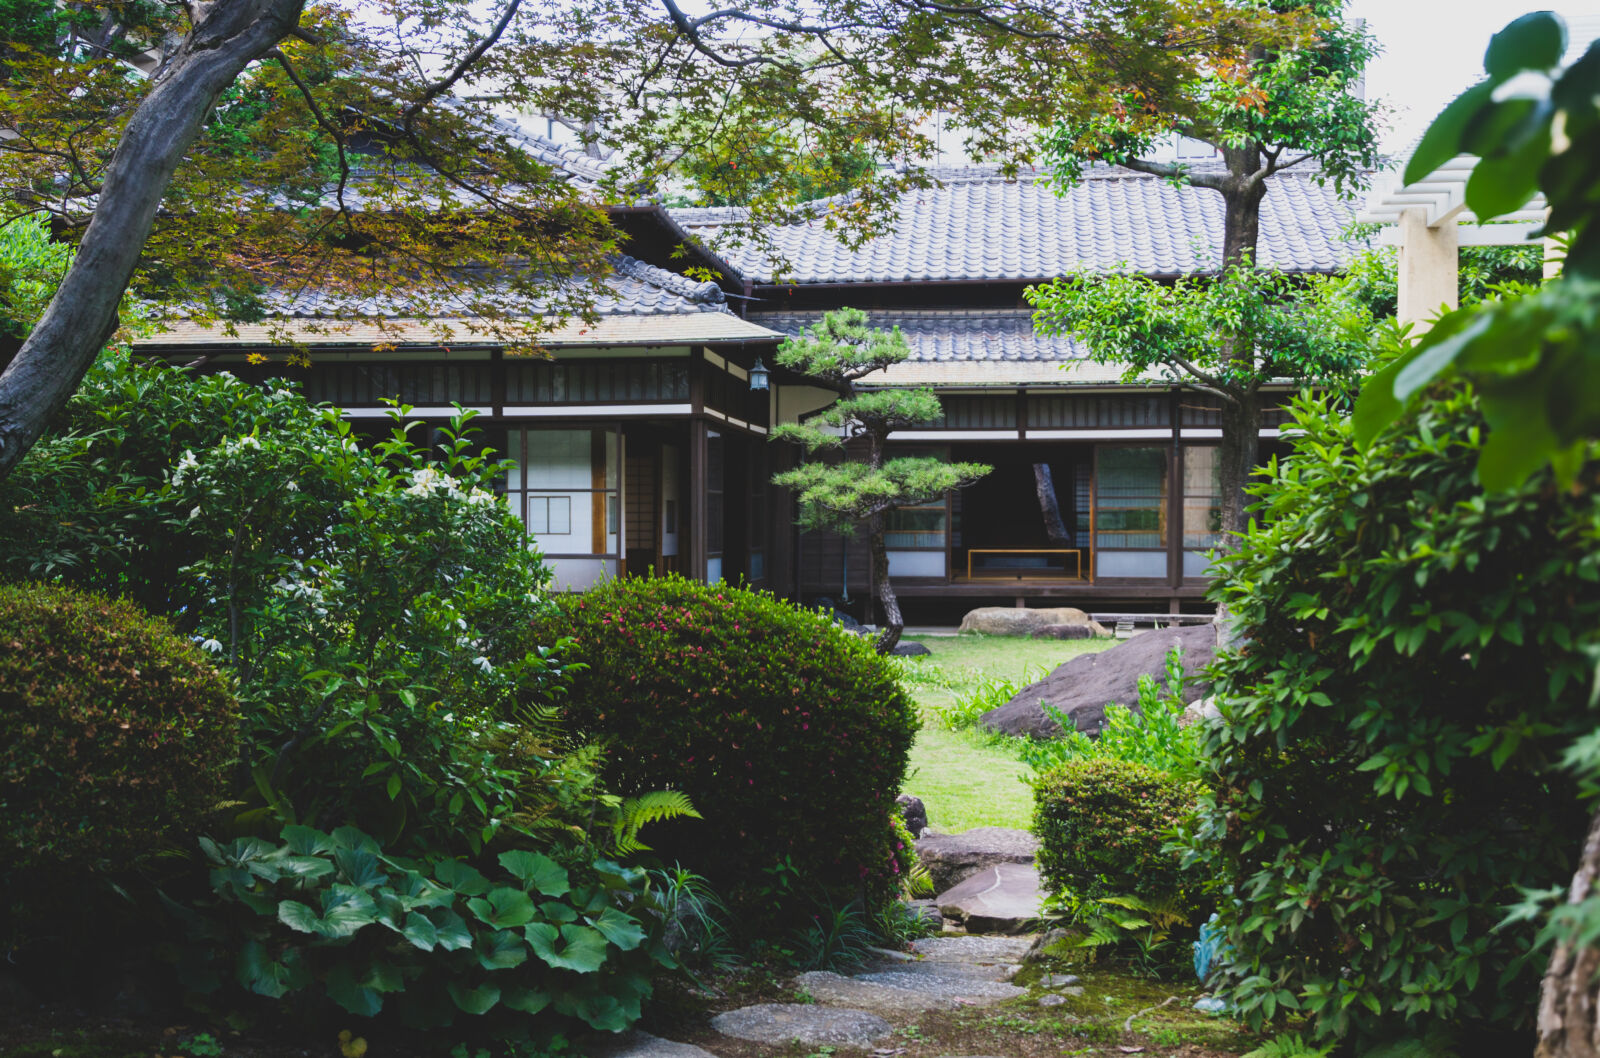 名古屋文化路径上一栋房屋的私家花园